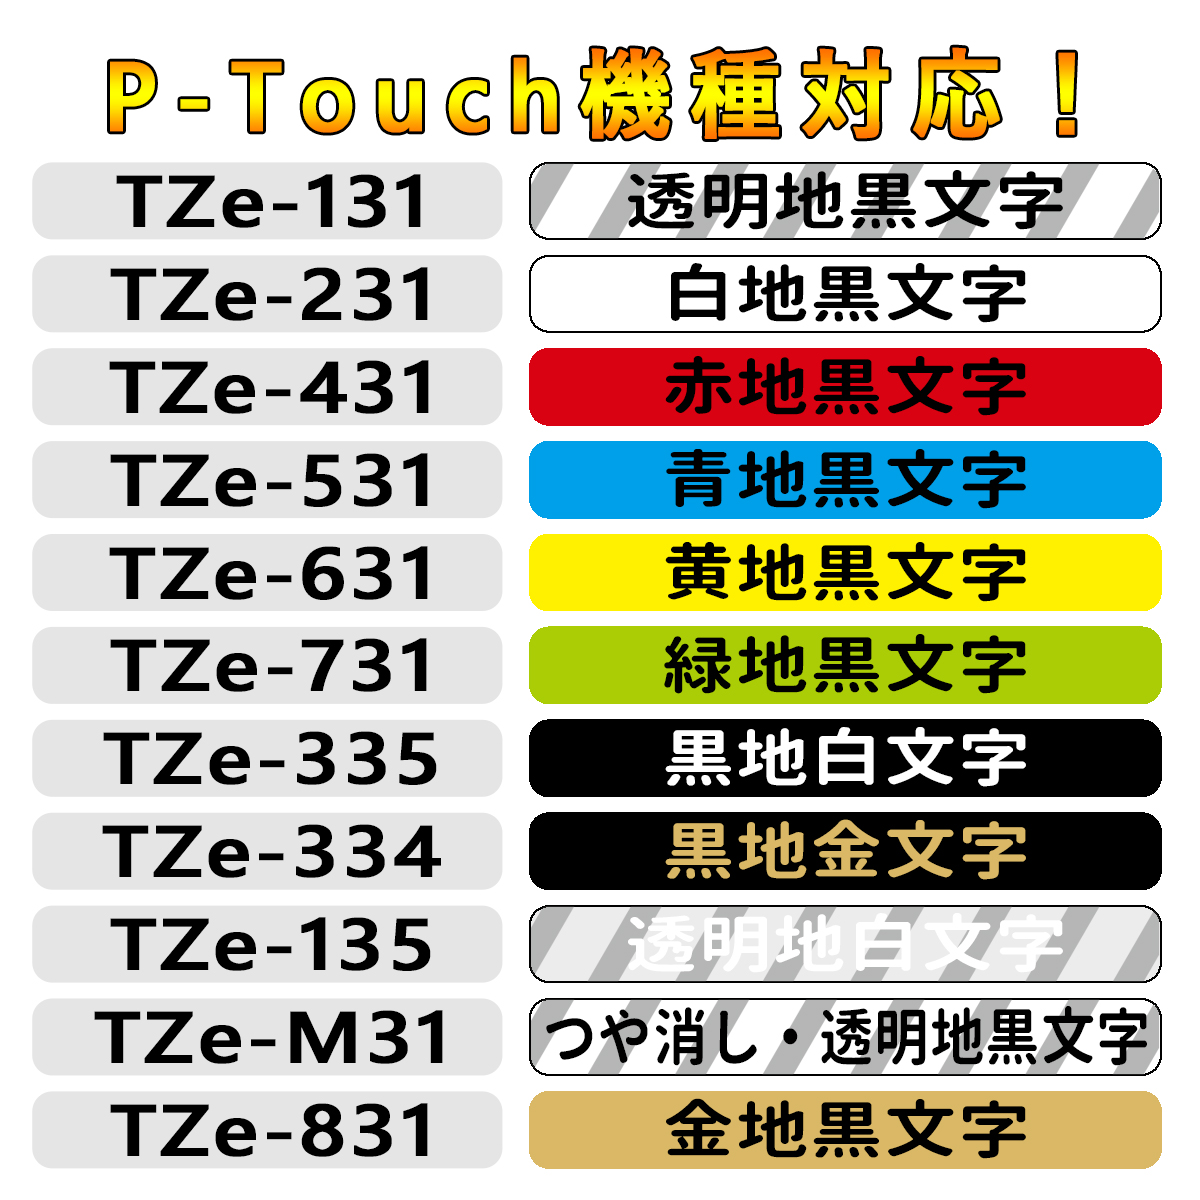 ブラザー用 Tzeテープ 12mm幅X8m巻 ピータッチキューブ 31色自由選択 10個 テープ 互換品 P-Touch用 ピータッチ 互換 互換テープカートリッジ  ラベル・ステッカー | osonh.edu.ba